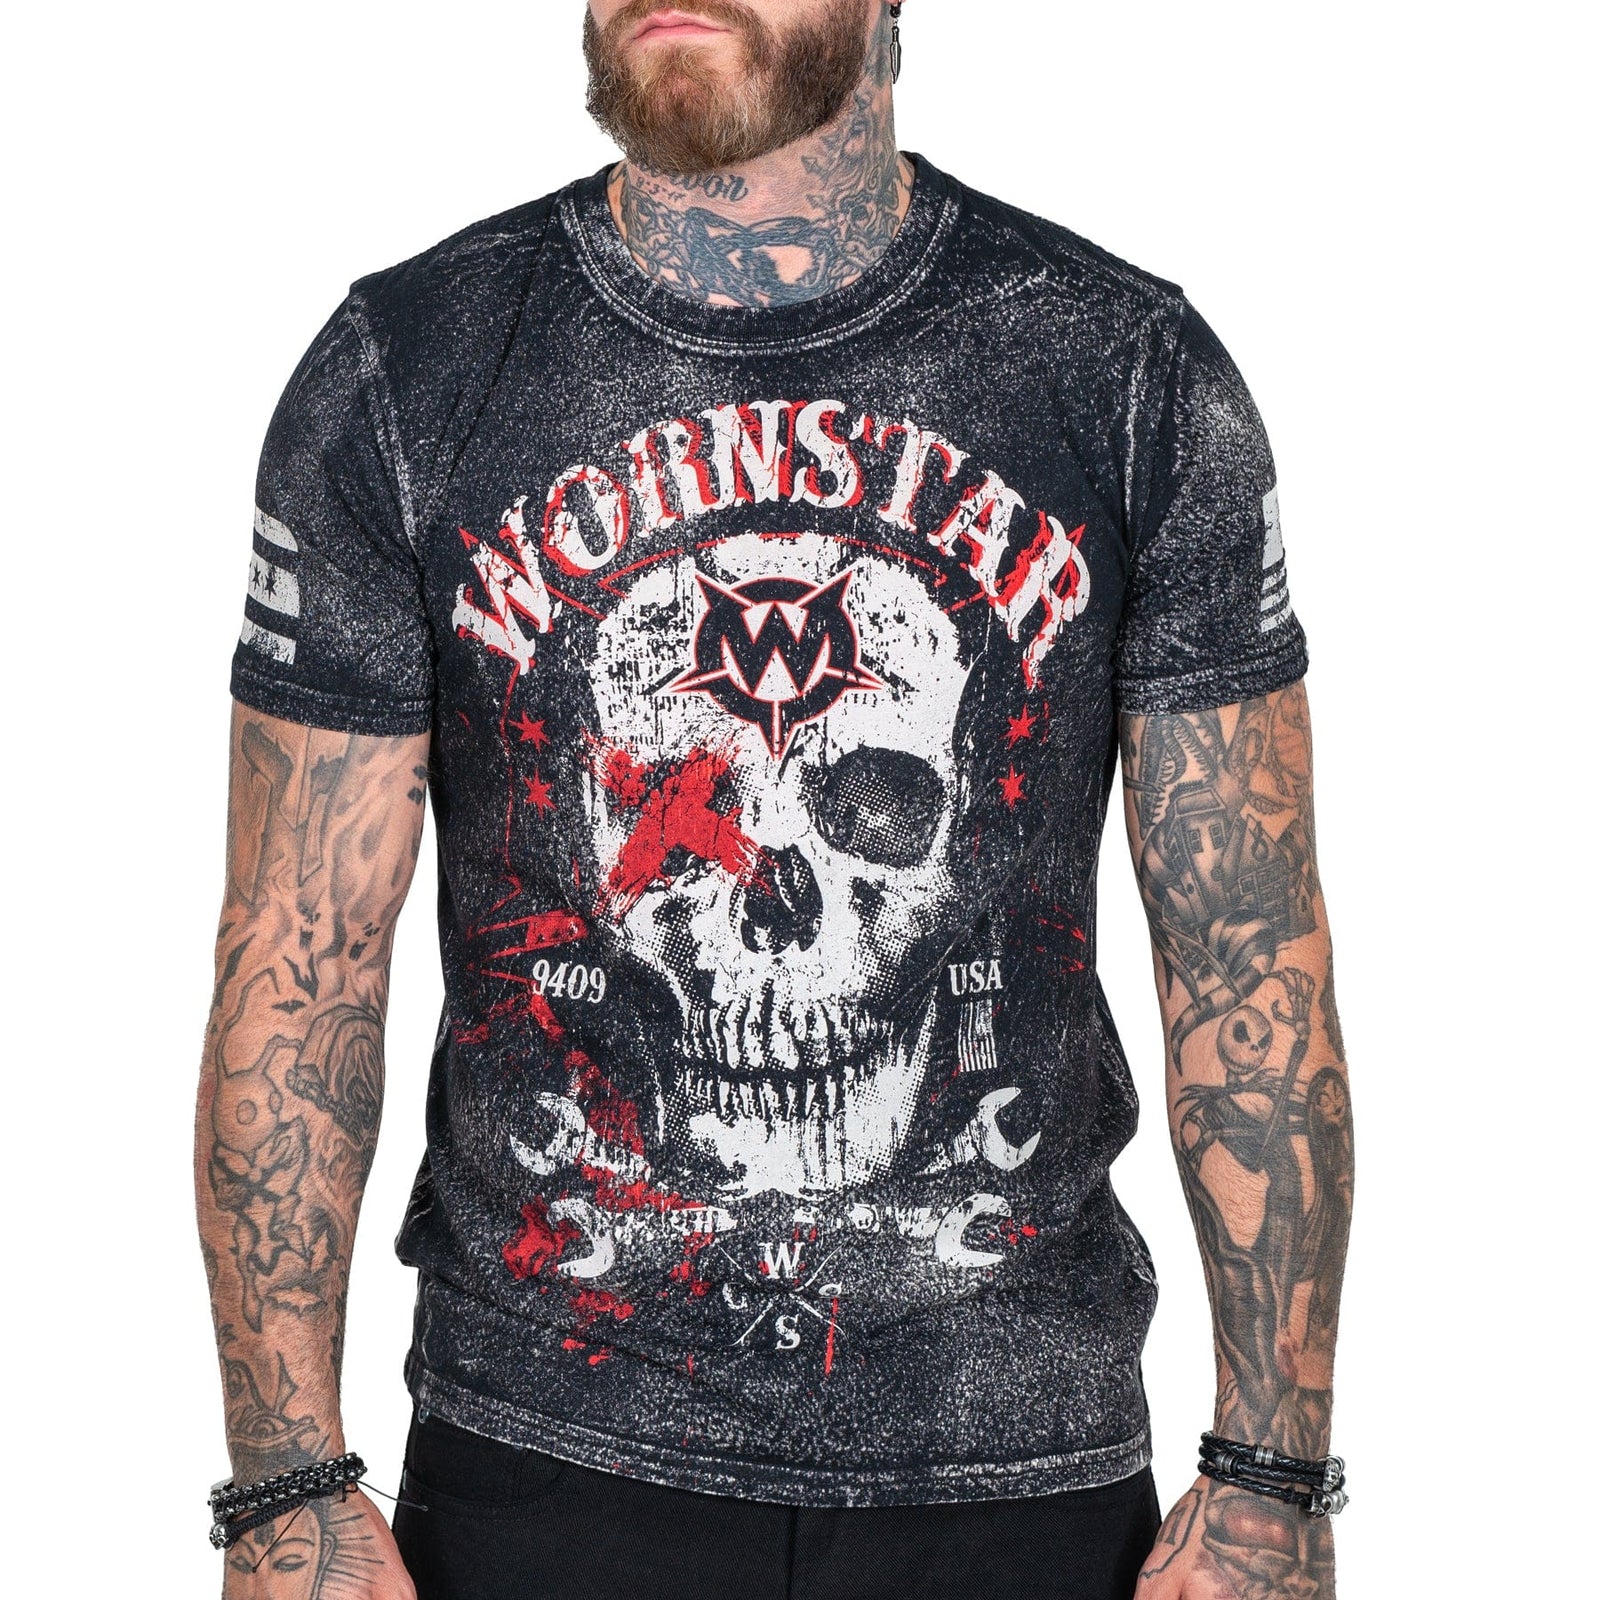 Wornstar Clothing Mens Skull T-Shirt Death Mechanic Mens Tee - Black